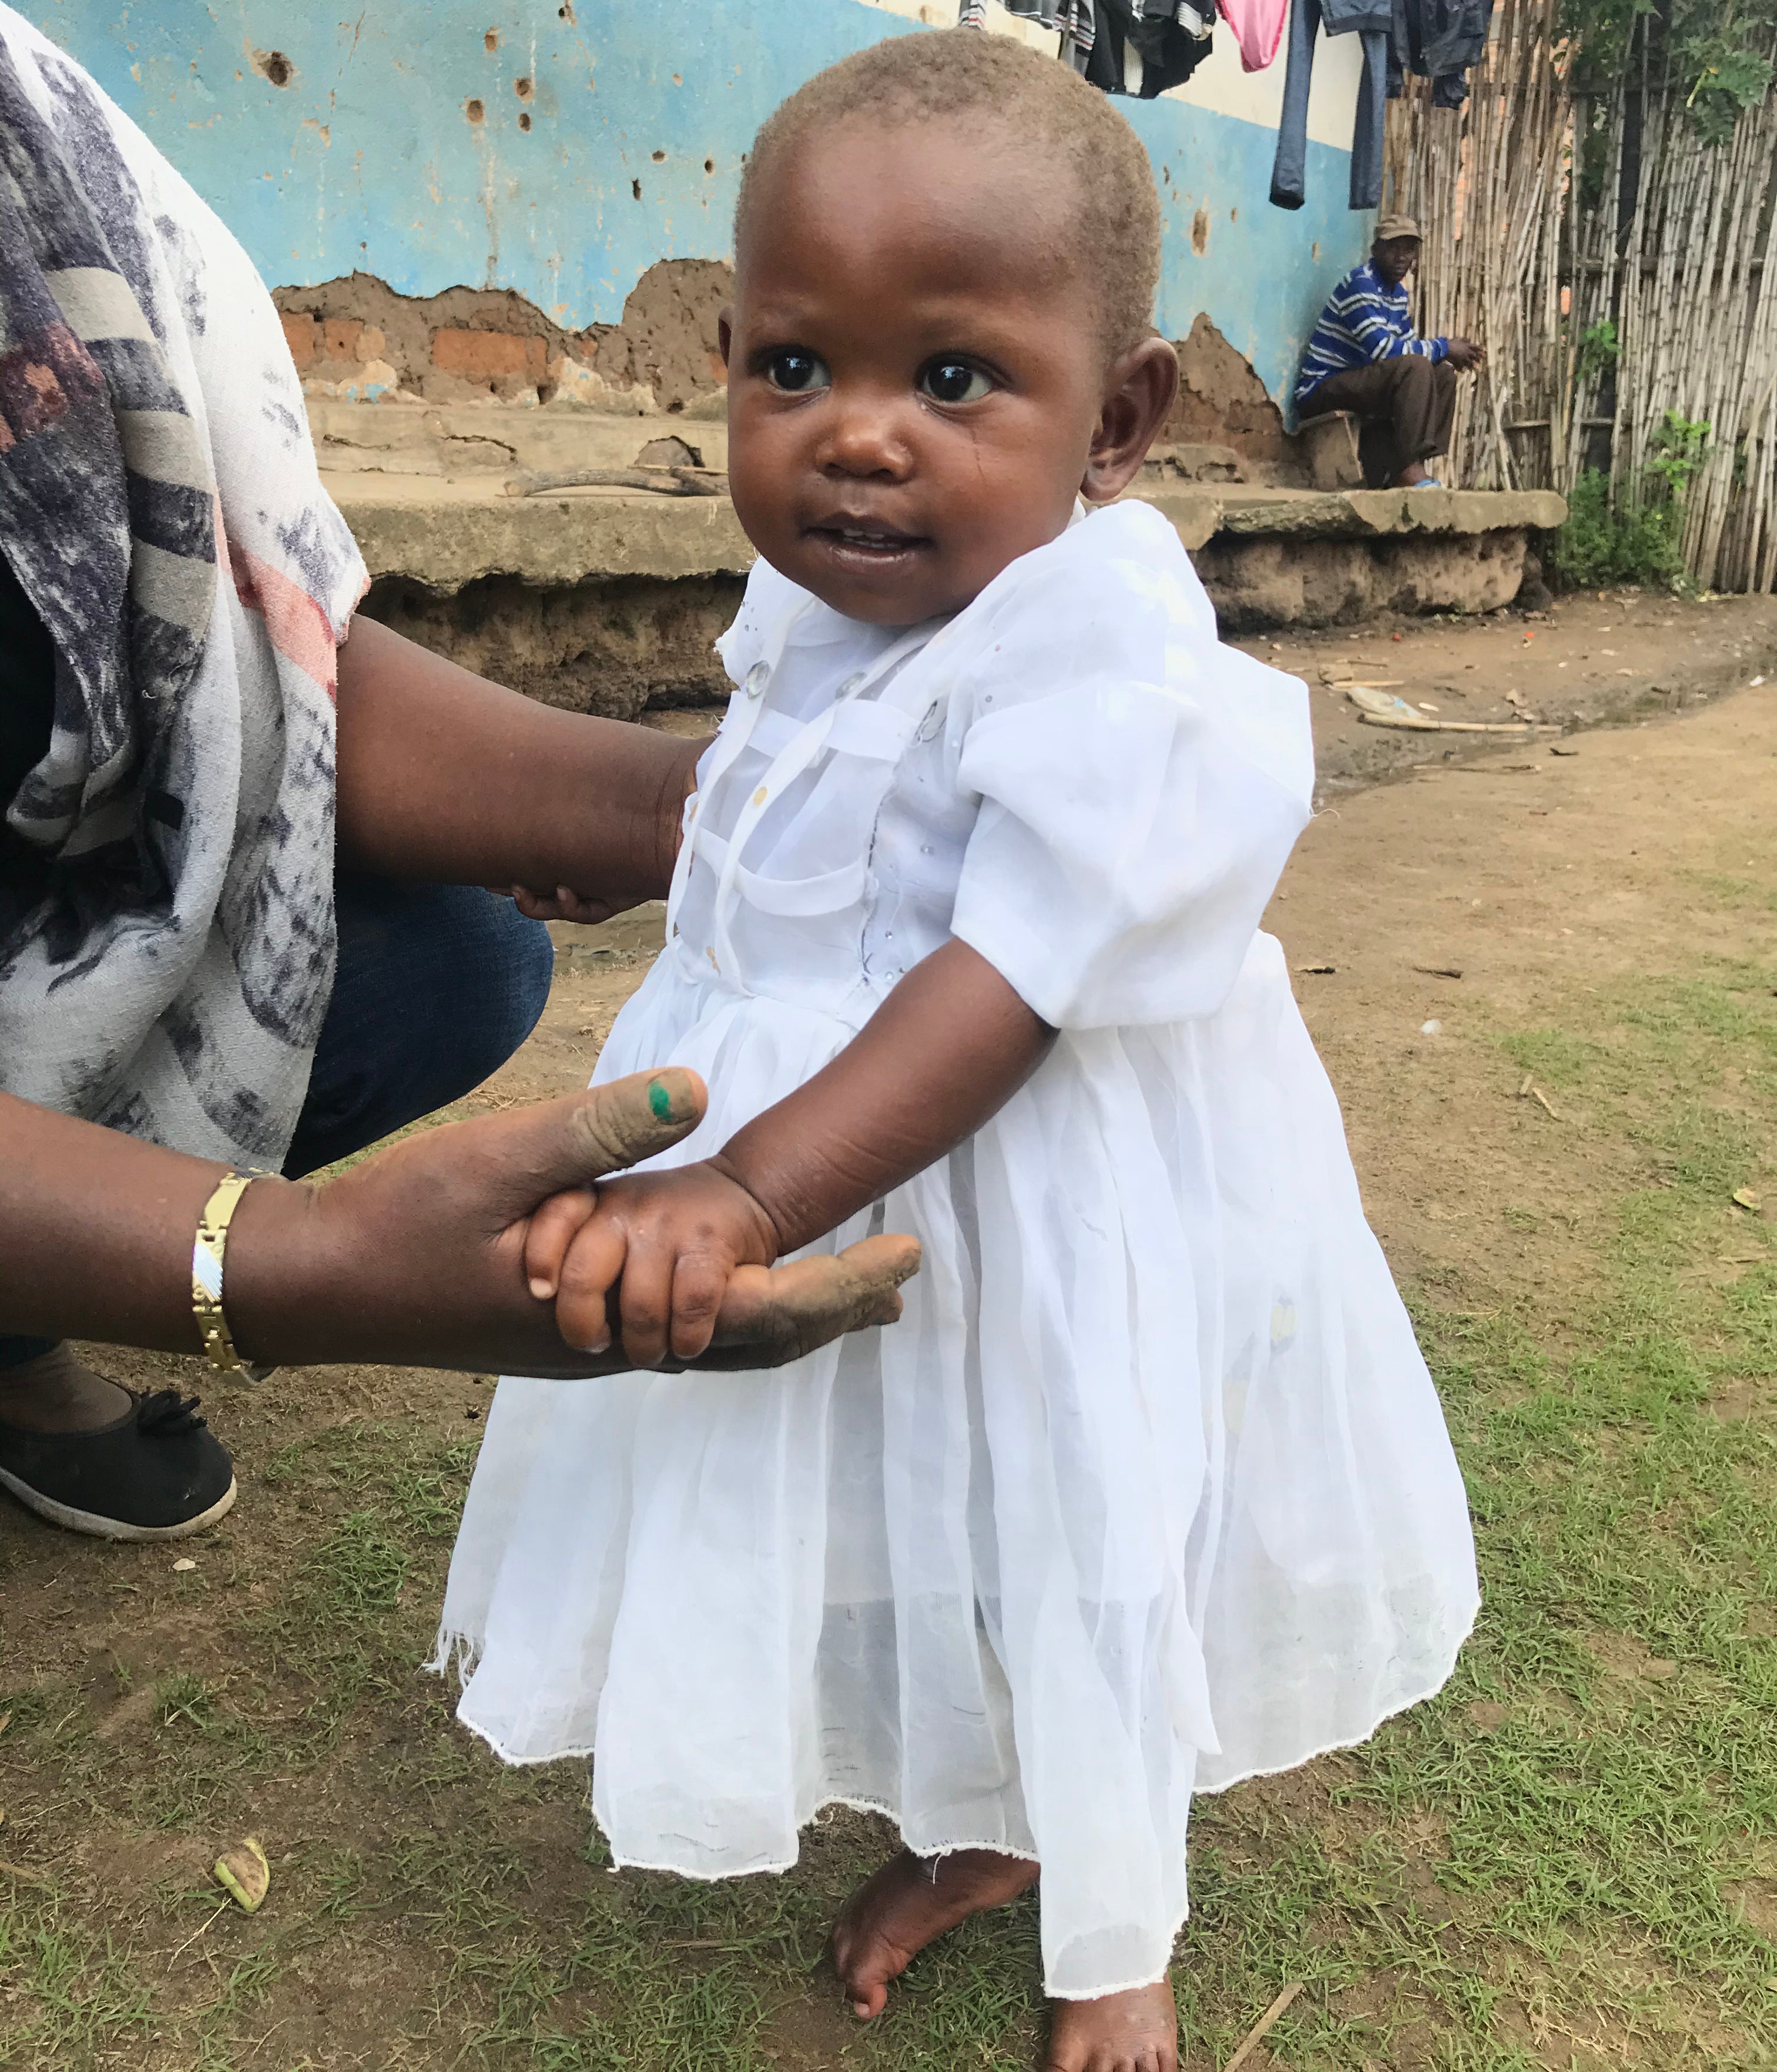 1,5 vuotiaan Dielan terveydentila on nyt hyvä ja hänesta on kasvanut vahva taapero. Hänen terveydentilaansa seurataan edelleen säännöllisesti terveysasemalla. Terveydenhoitajat ovat iloisia lapsen voinnin paranemisesta. 